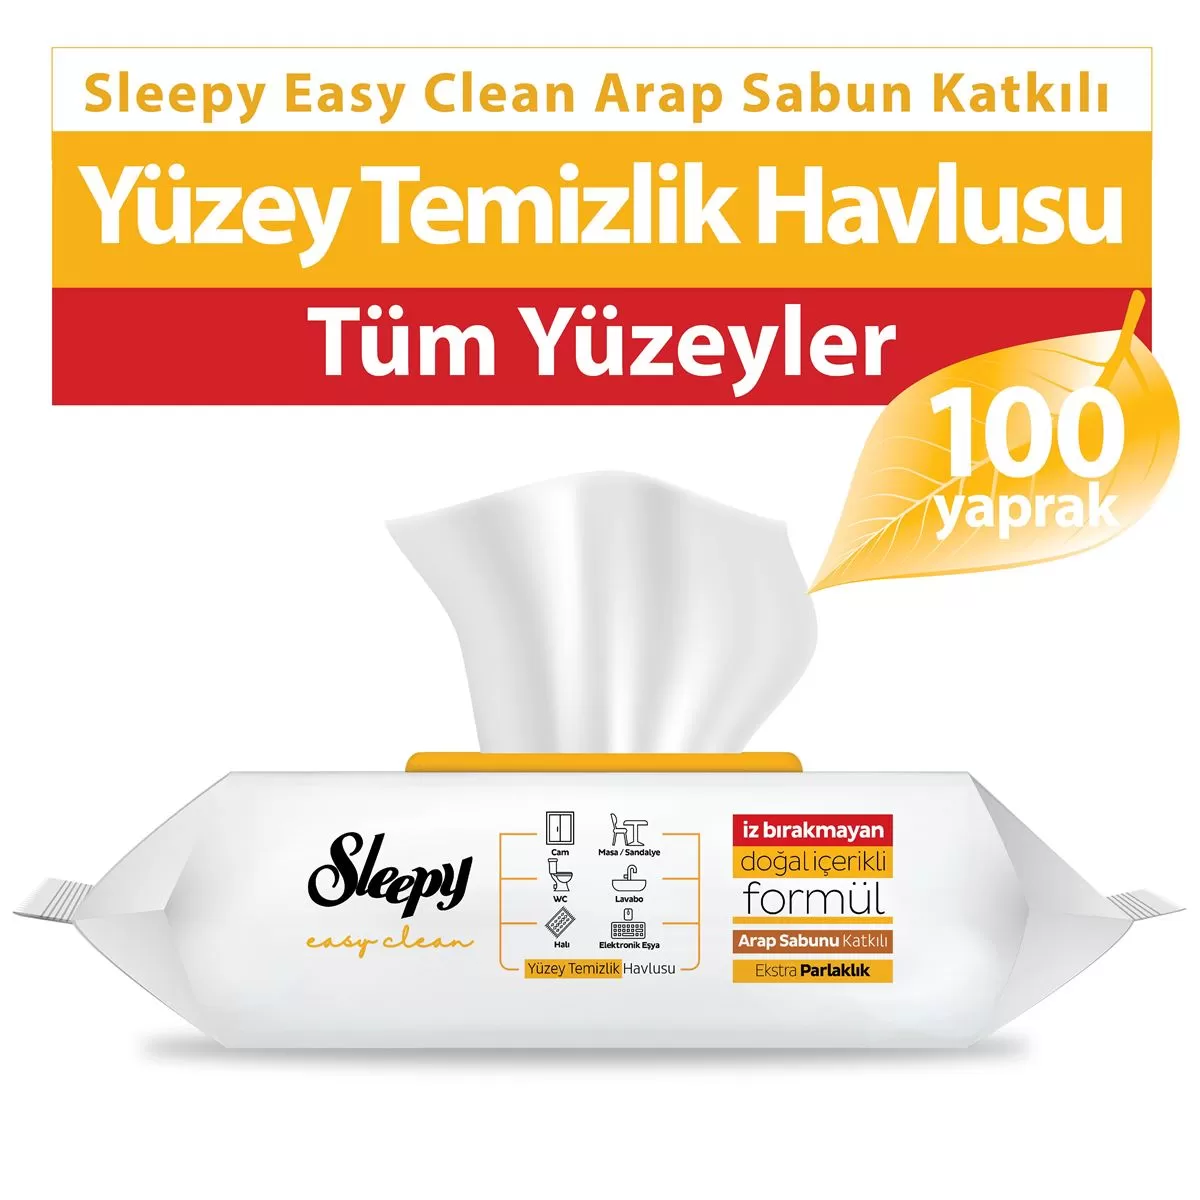 Sleepy Easy Clean Yüzey Temizlik Havlusu Arap Sabun Katkılı 100 Yaprak 7 Paket